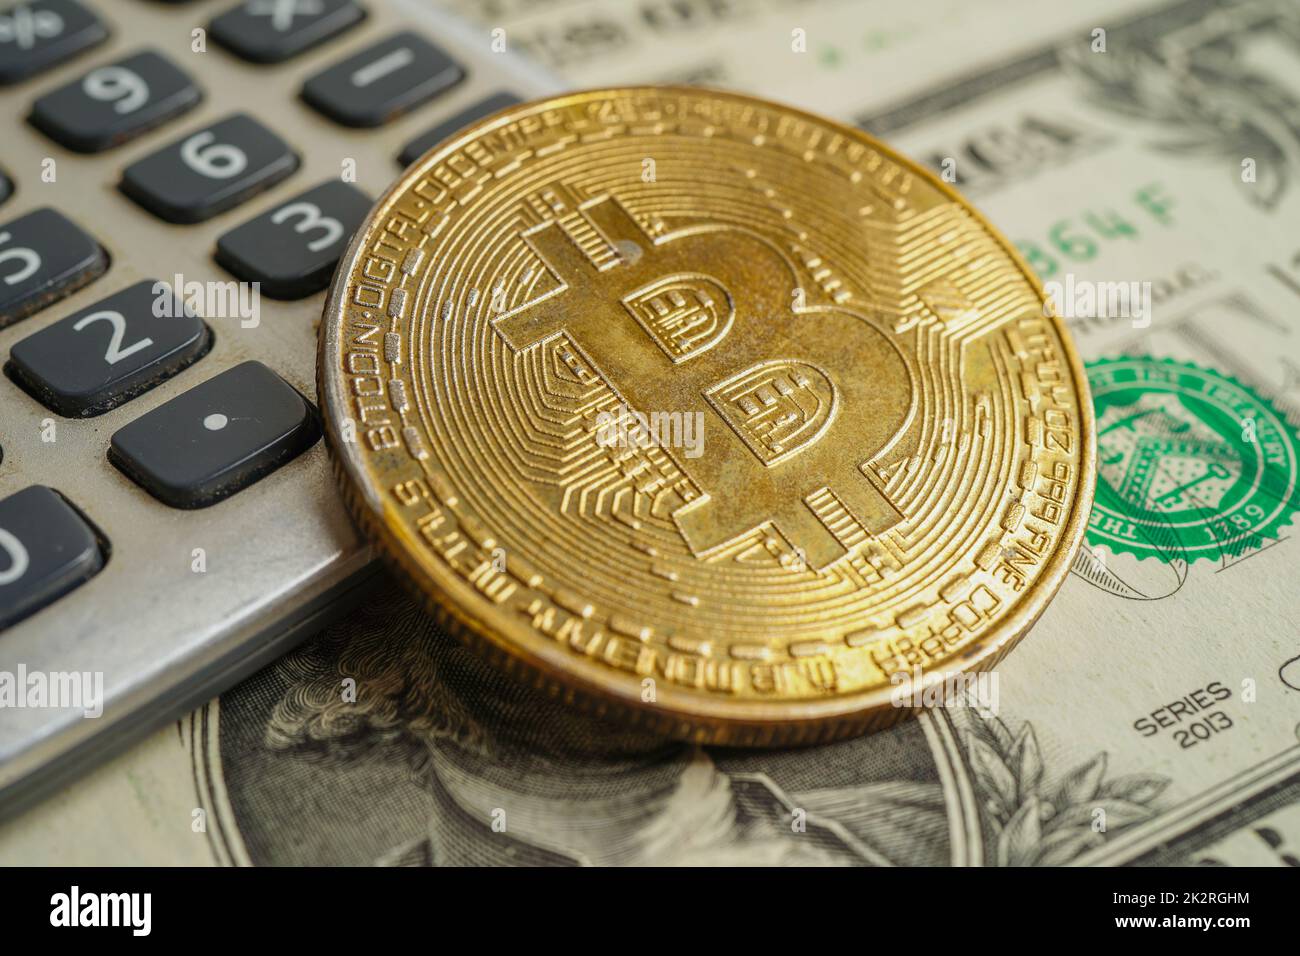 Goldene Bitcoin mit Kreditkarte auf US-Dollar-Banknoten Geld für Unternehmen und Gewerbe, Digitale Währung, Virtuelle Kryptowährung. Stockfoto